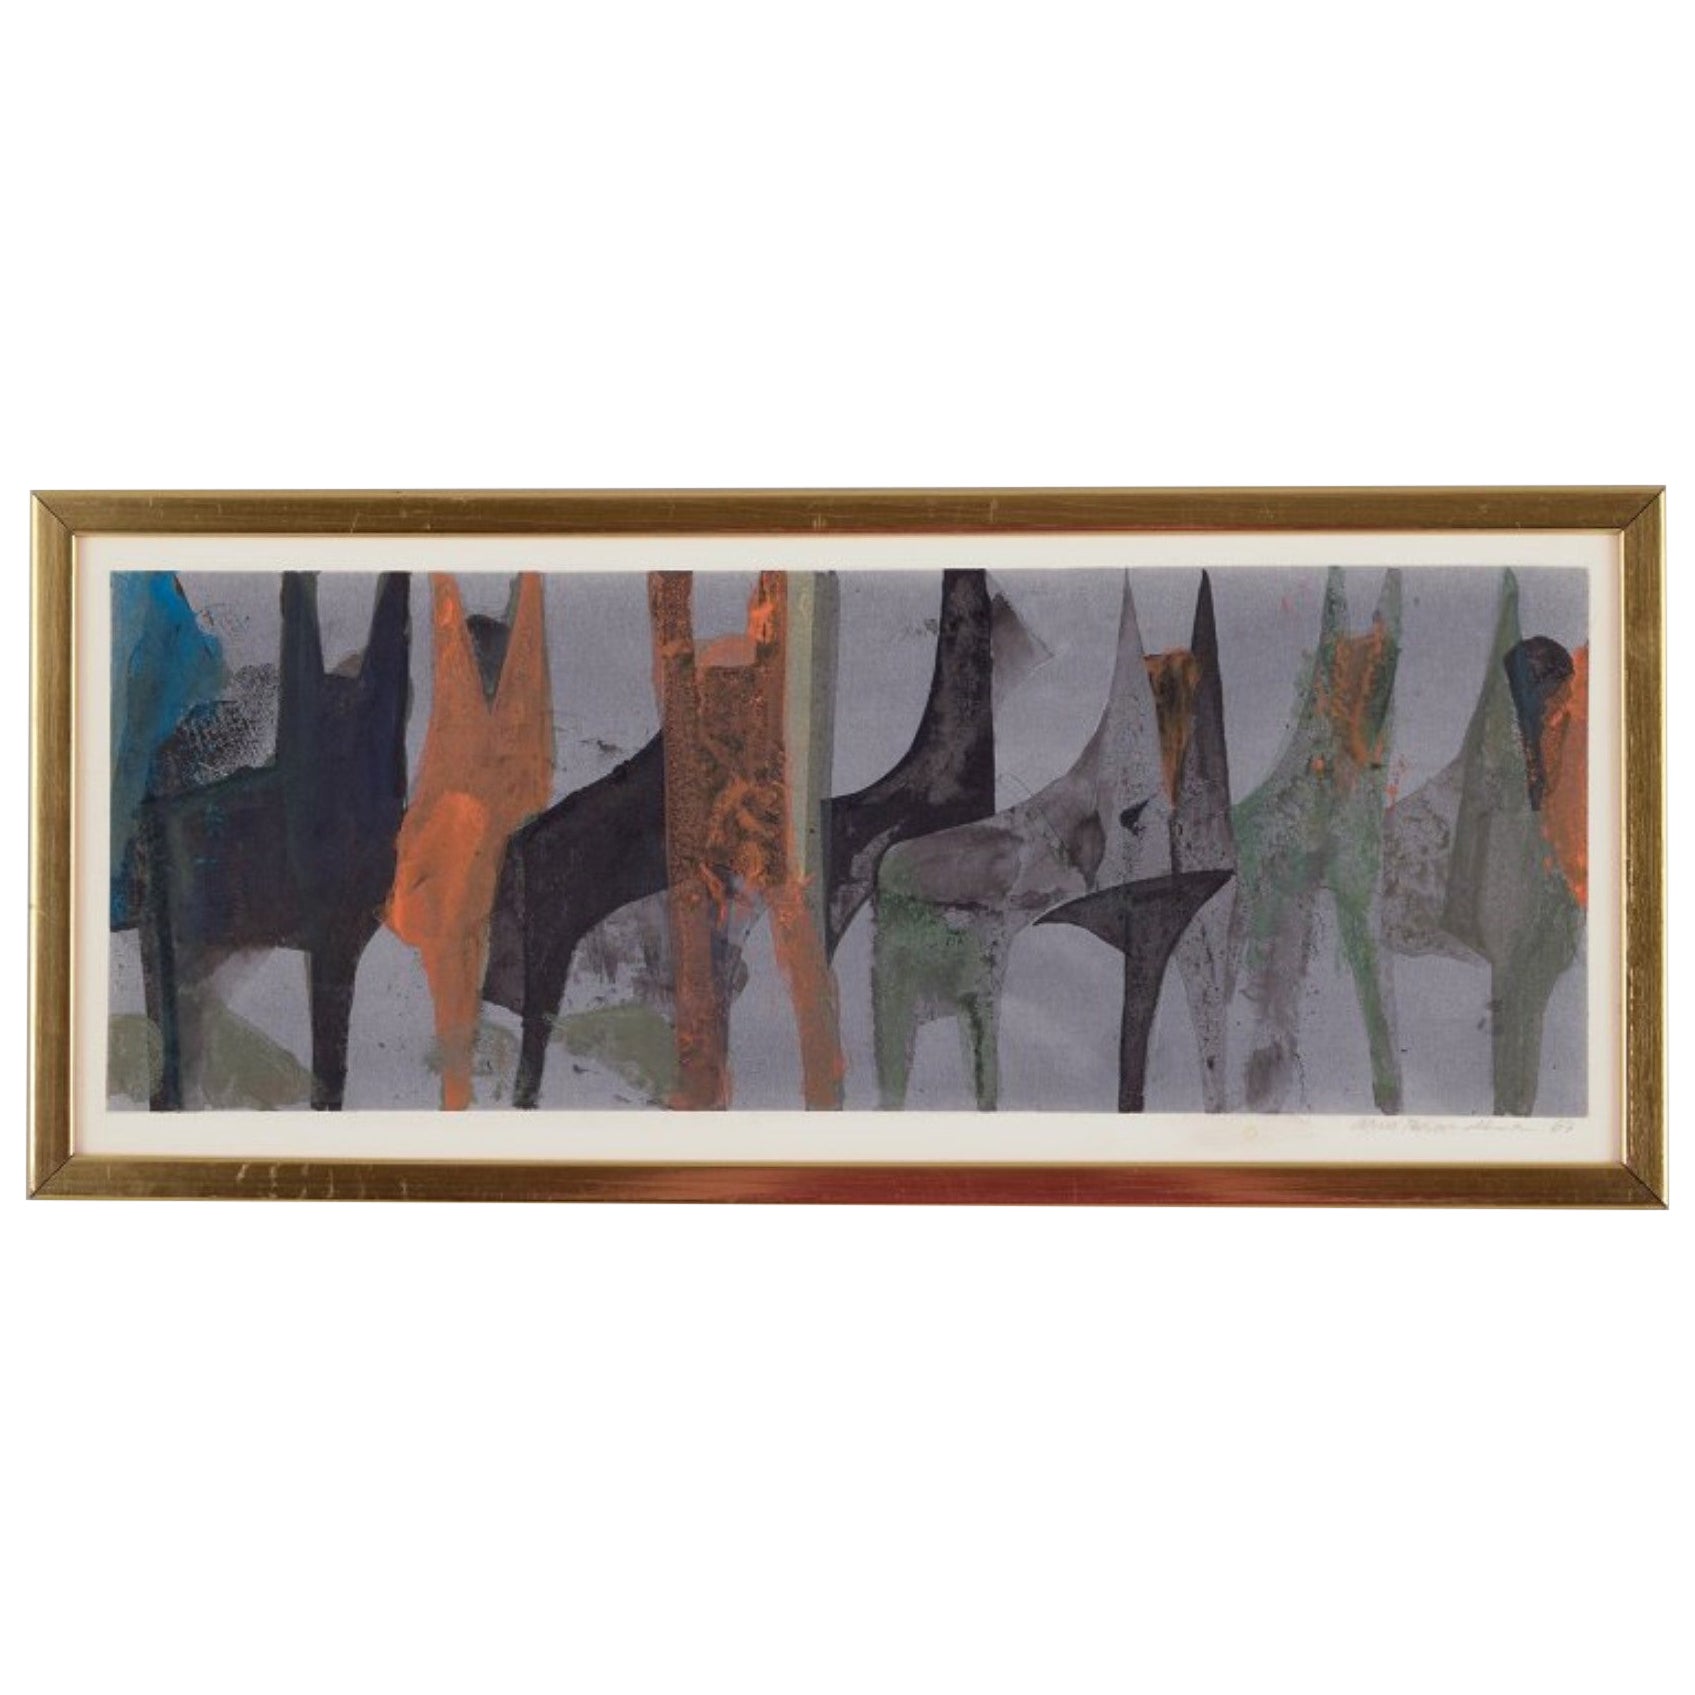 Arne Brandtman, schwedischer Künstler. Farbdruck auf Papier. Abstrakte Zusammensetzung.